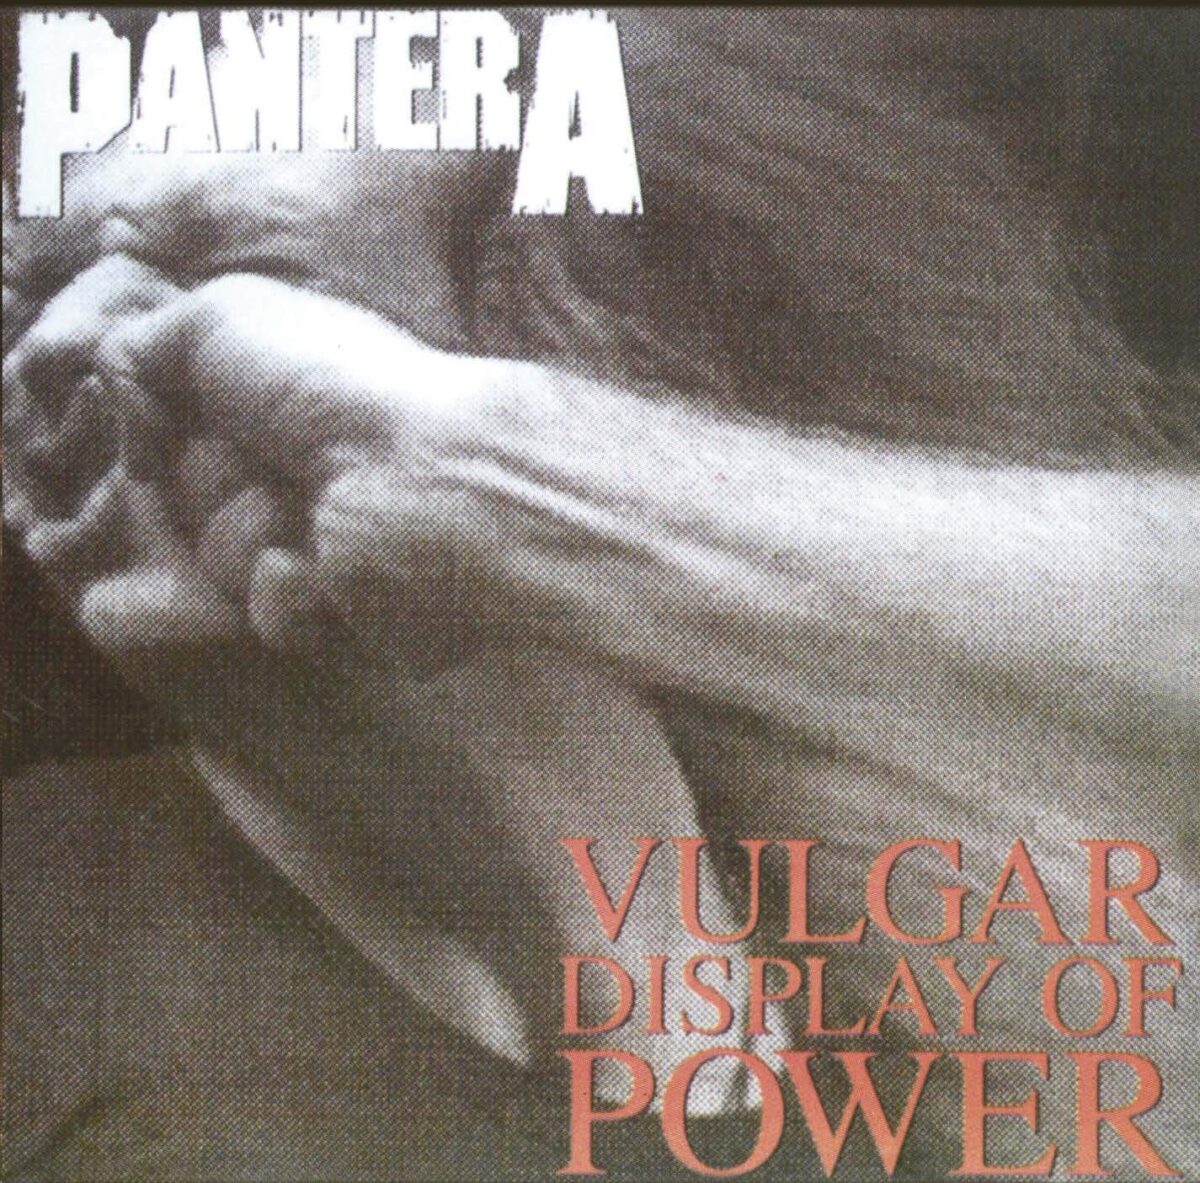 Vulgar Display of Power Album Cover